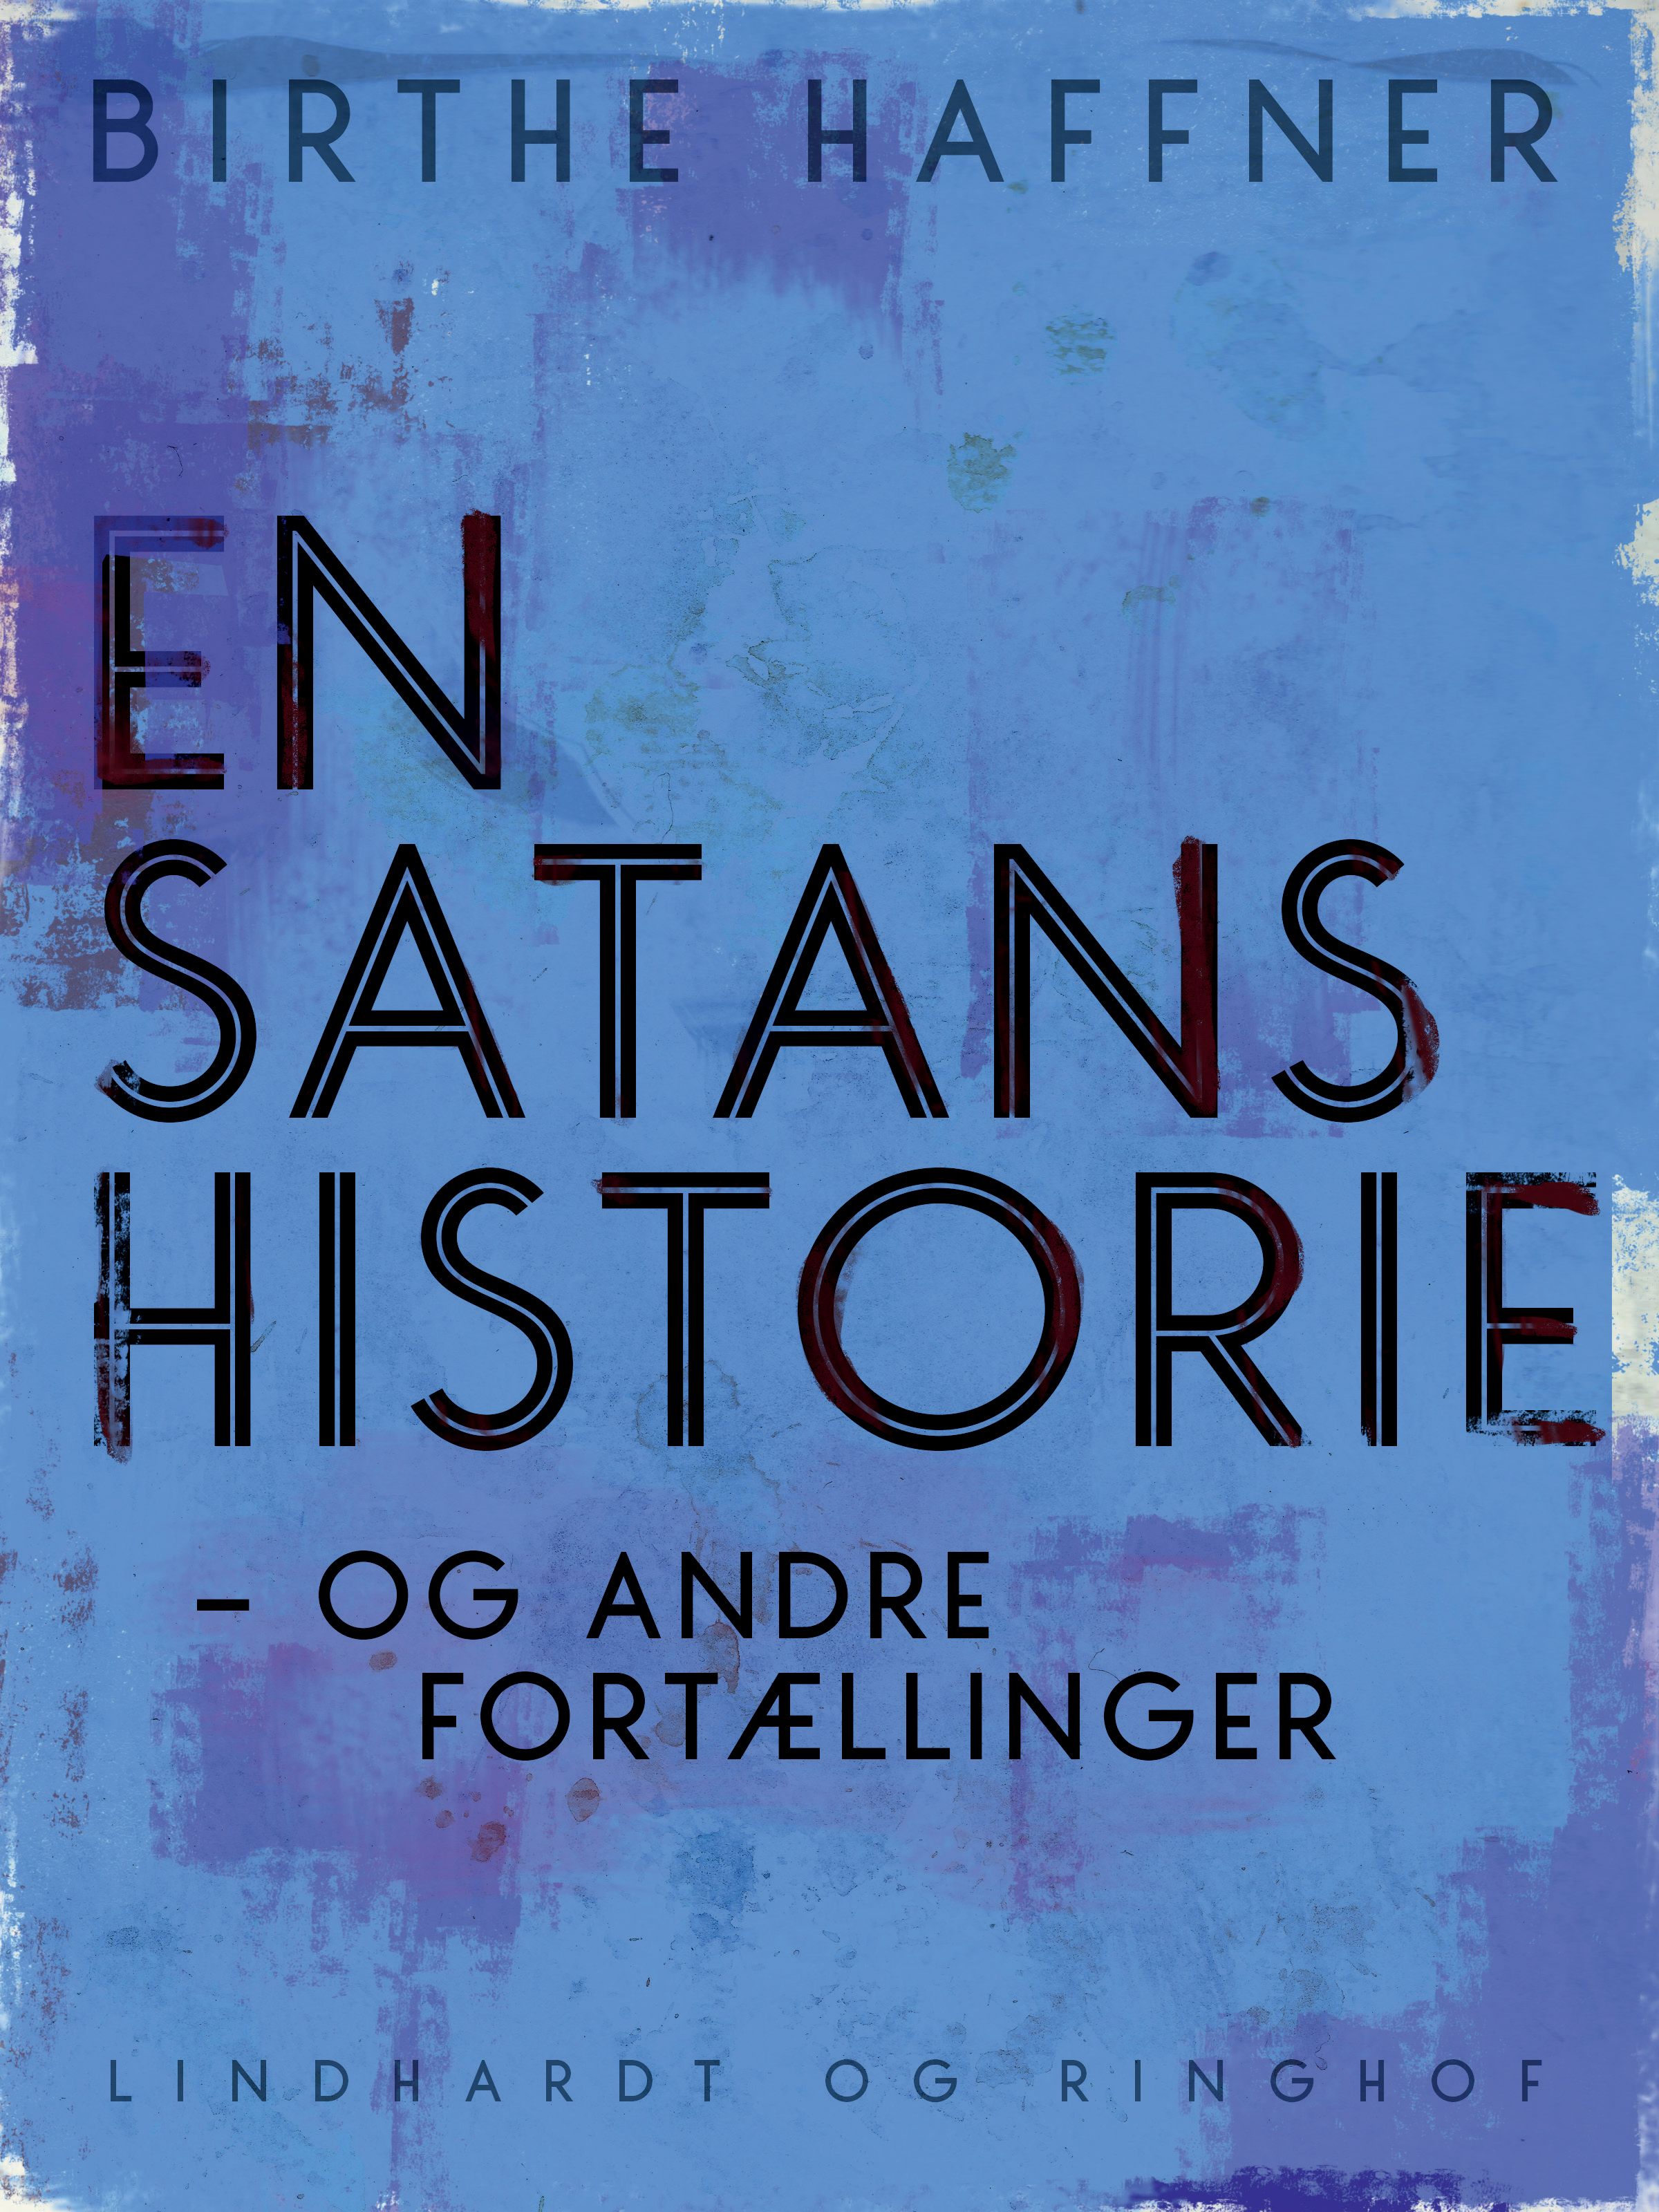 En satans historie - og andre fortællinger, lydbog af Birthe Haffner